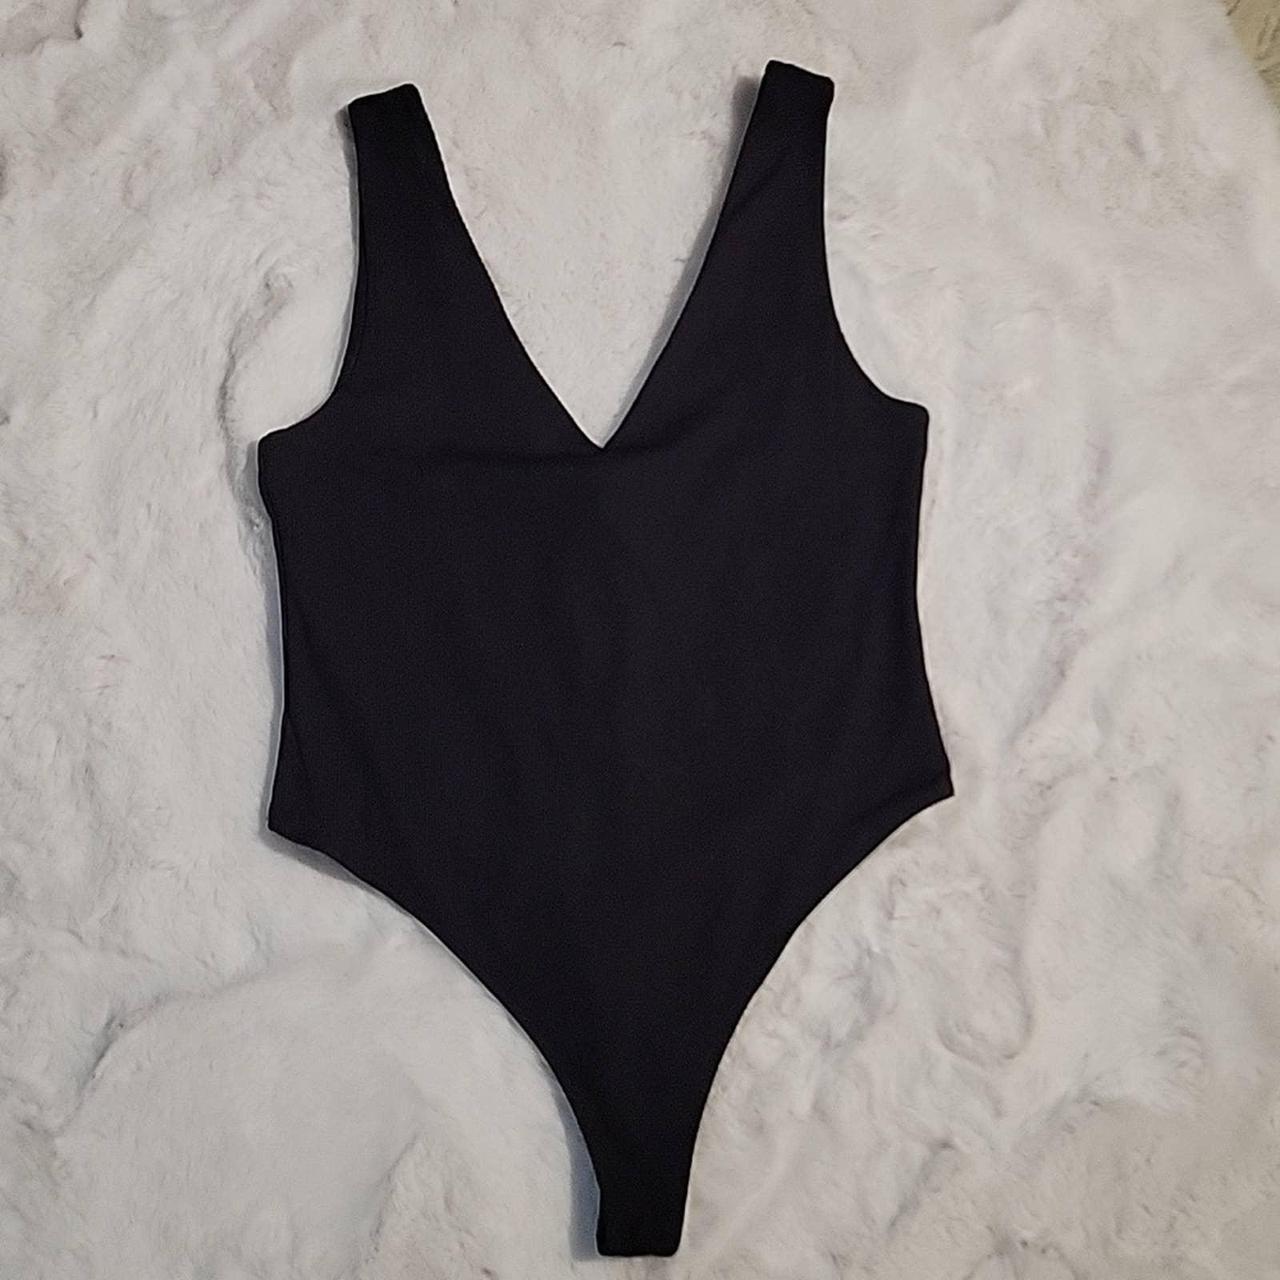 Zara Black V-Neck Bodysuit